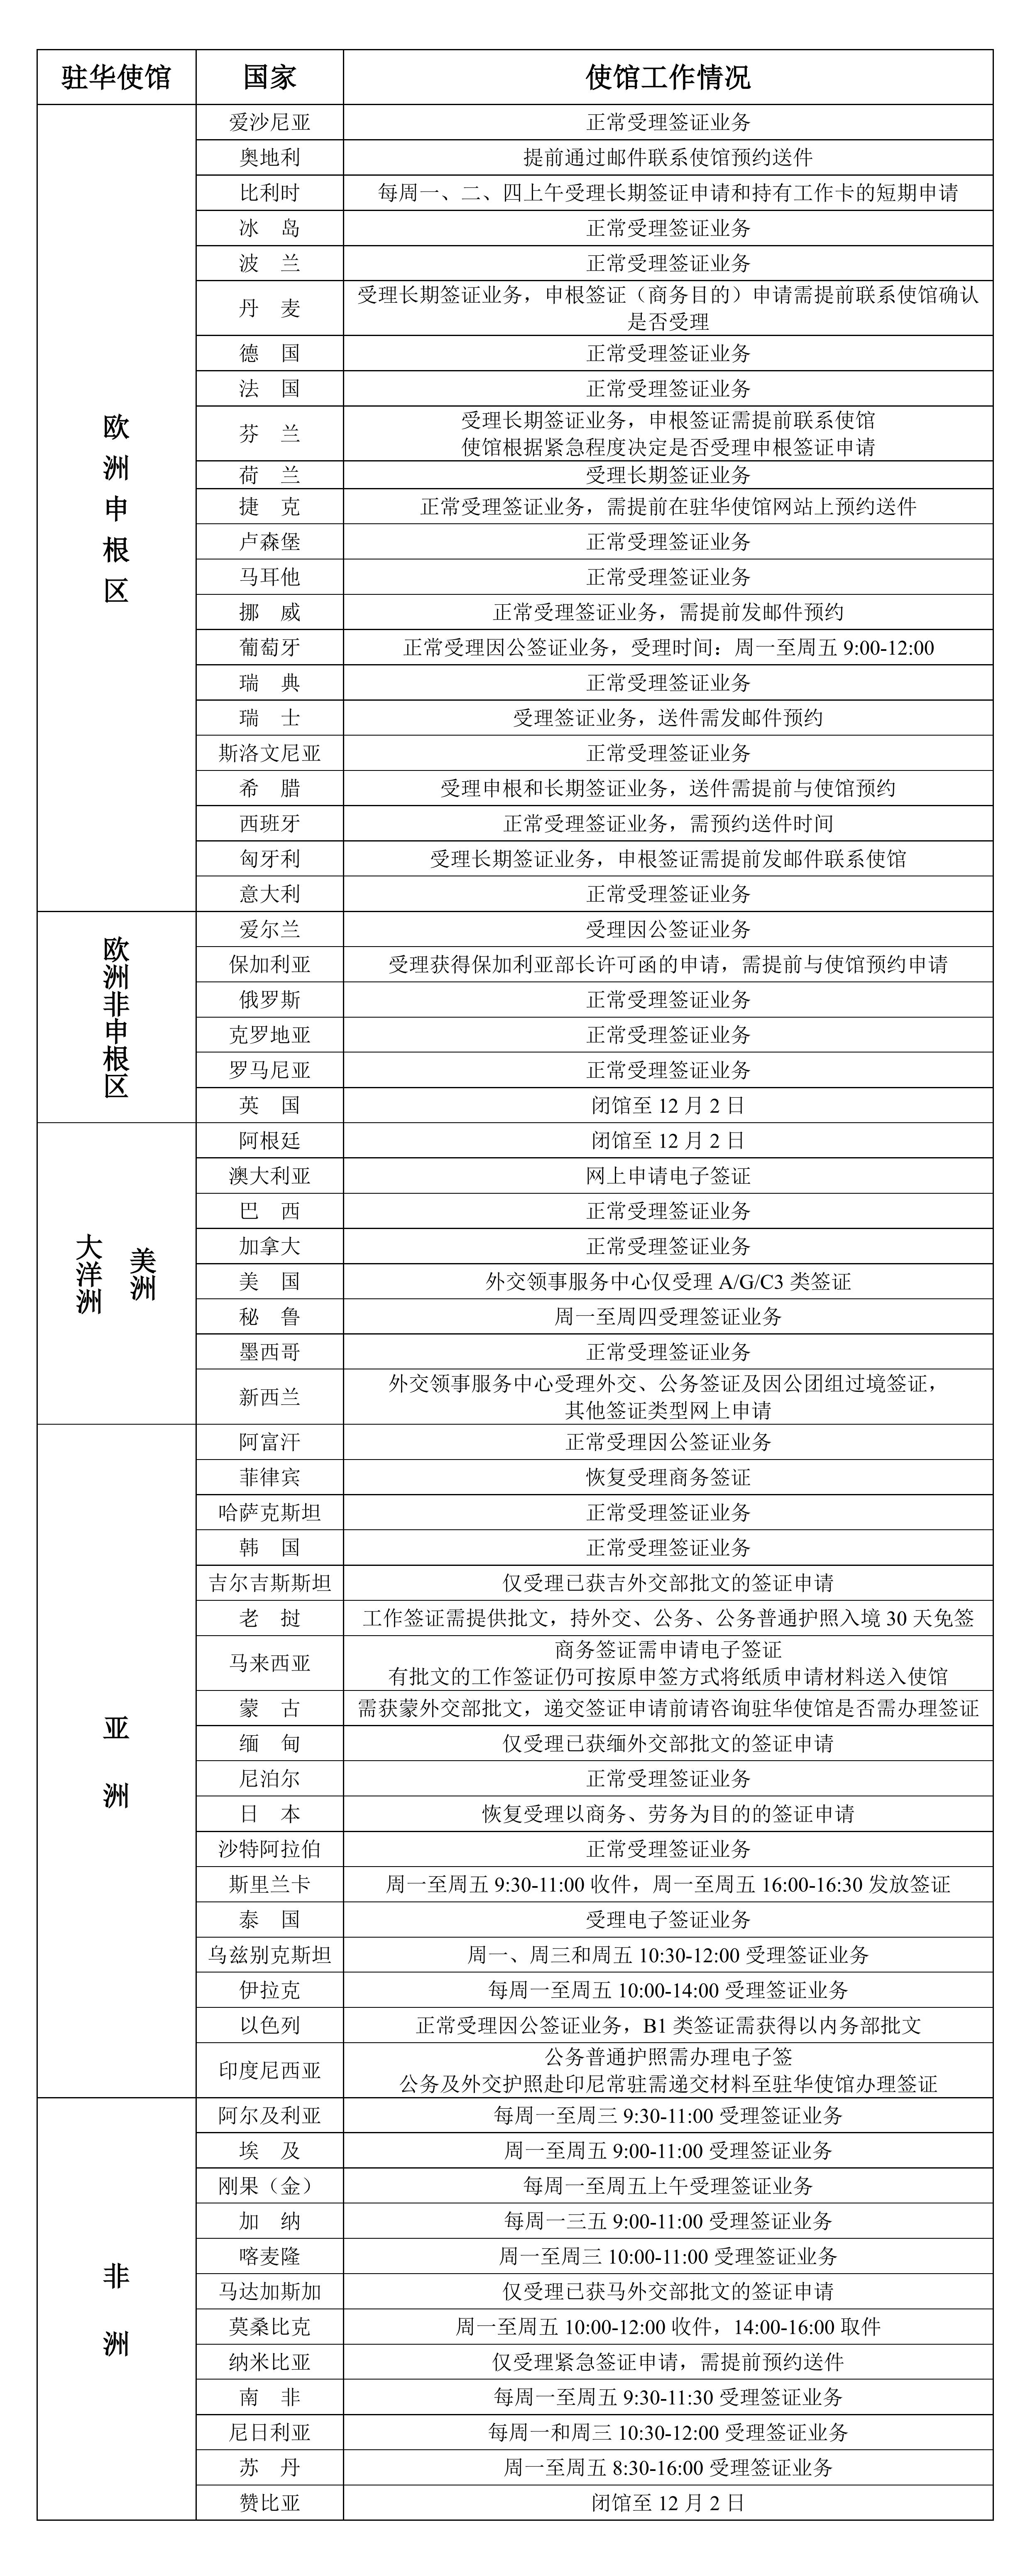 2022年11月30日部分驻华使馆工作情况统计表_00.jpg